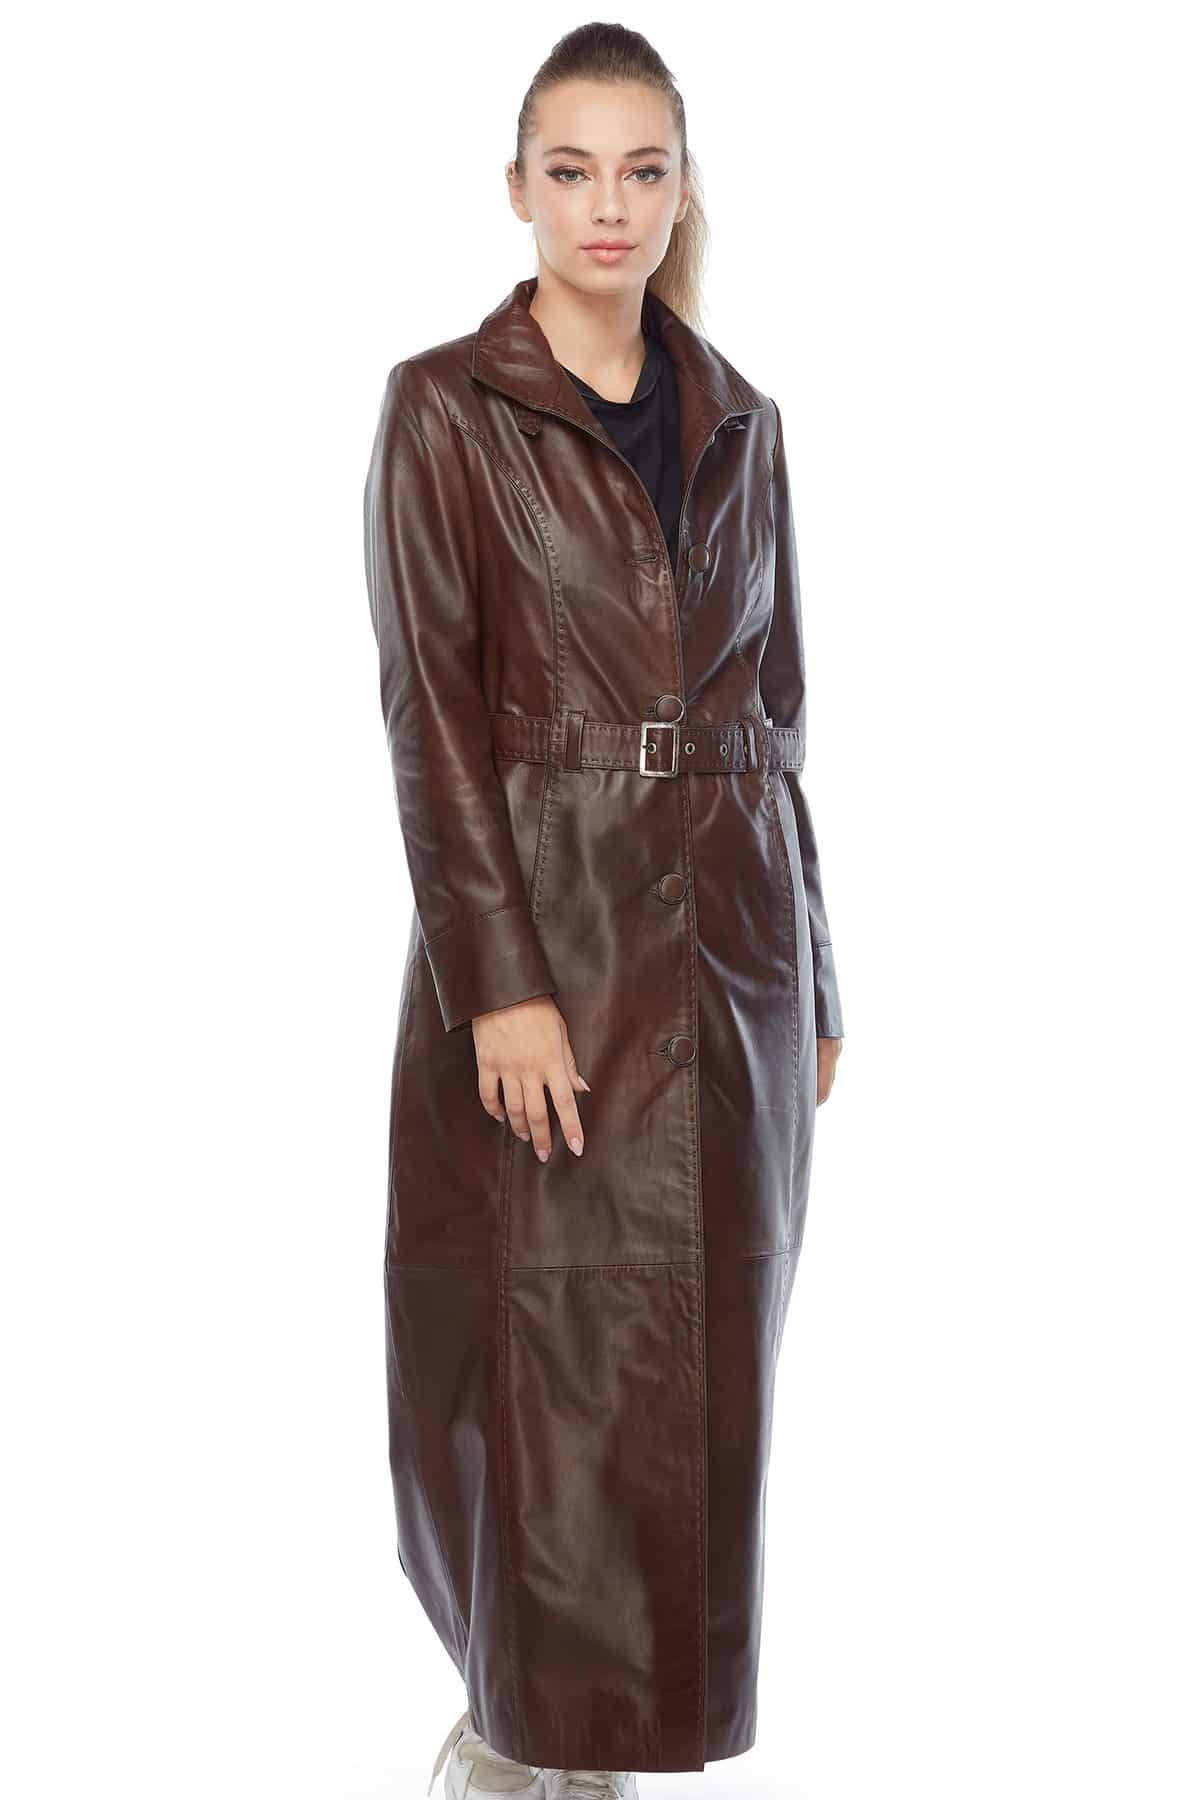 Women's Long Leather Jacket Lapel Slim Trench Coat Windbreaker outwear  parkas | eBay